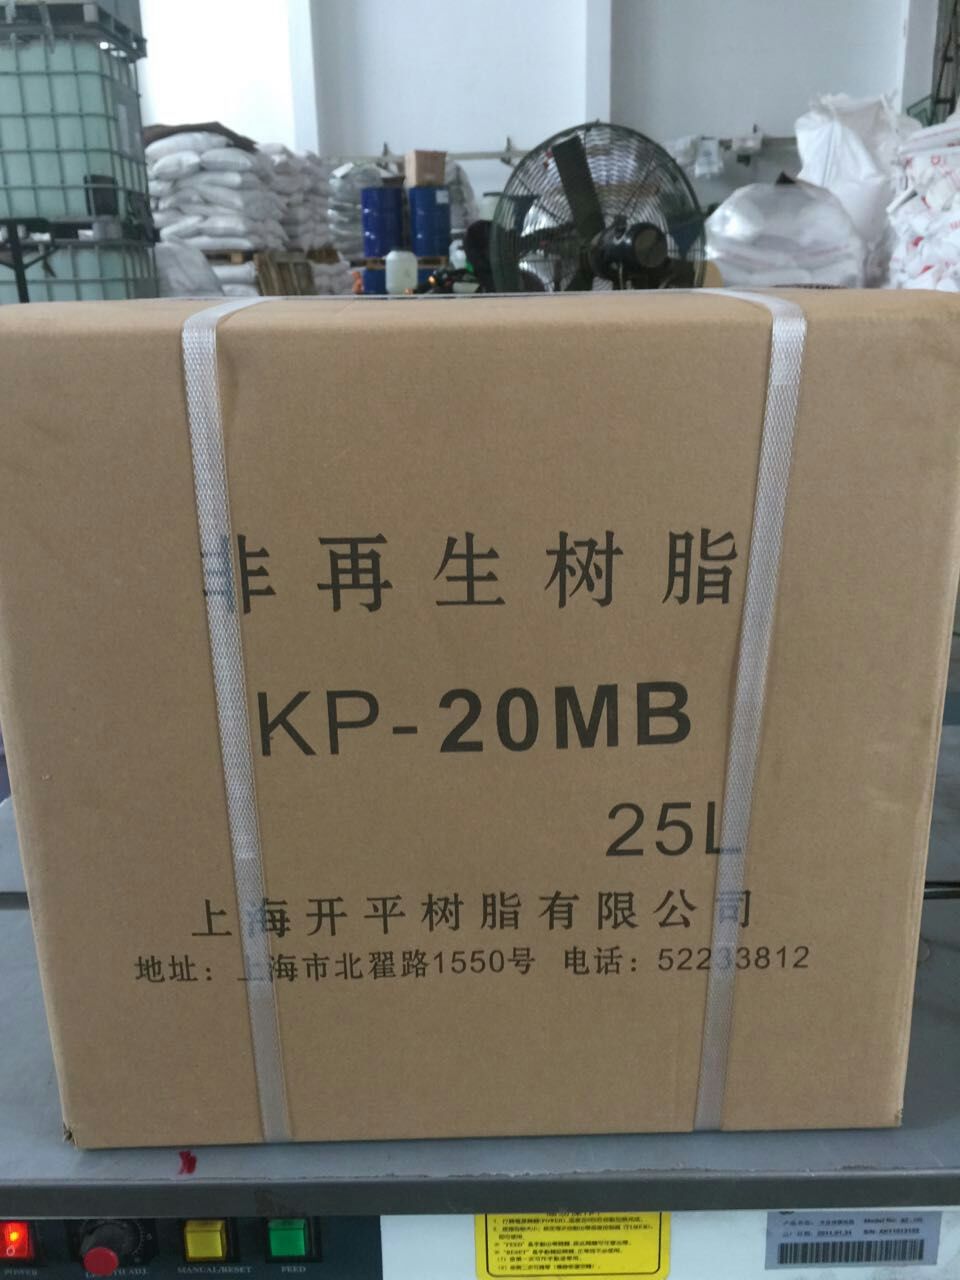 上海开平 KP20MB超纯水混床离子交换树脂 价格优惠 生产高品质混床树脂厂家2